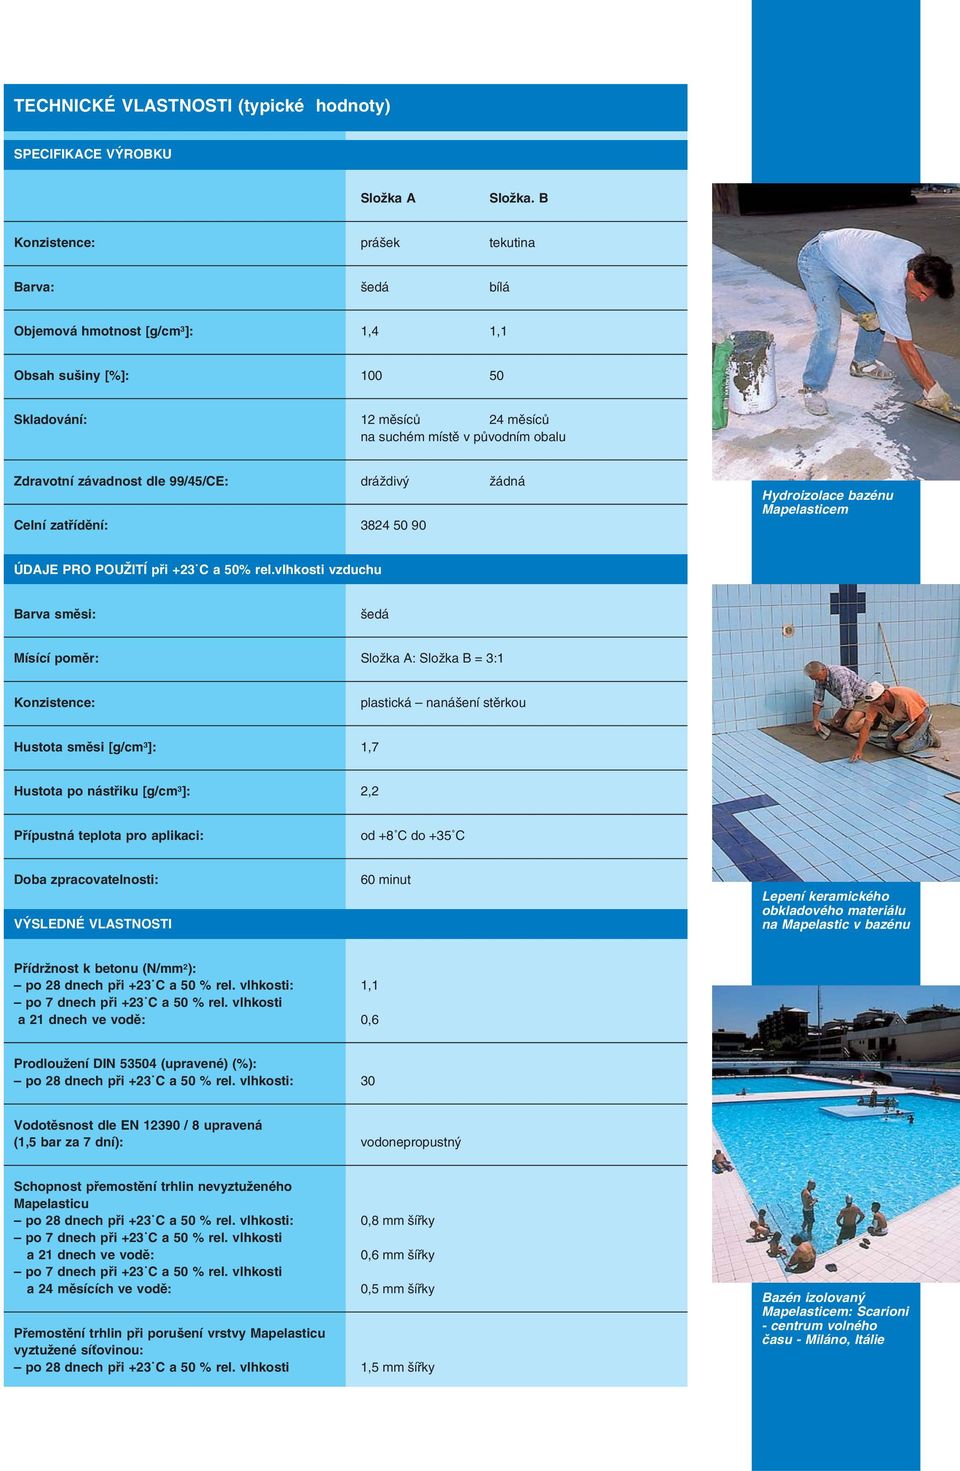 99/45/CE: dráždivý žádná Celní zatřídění: 3824 50 90 Hydroizolace bazénu ÚDAJE PRO POUŽITÍ při +23 C a 50% rel.